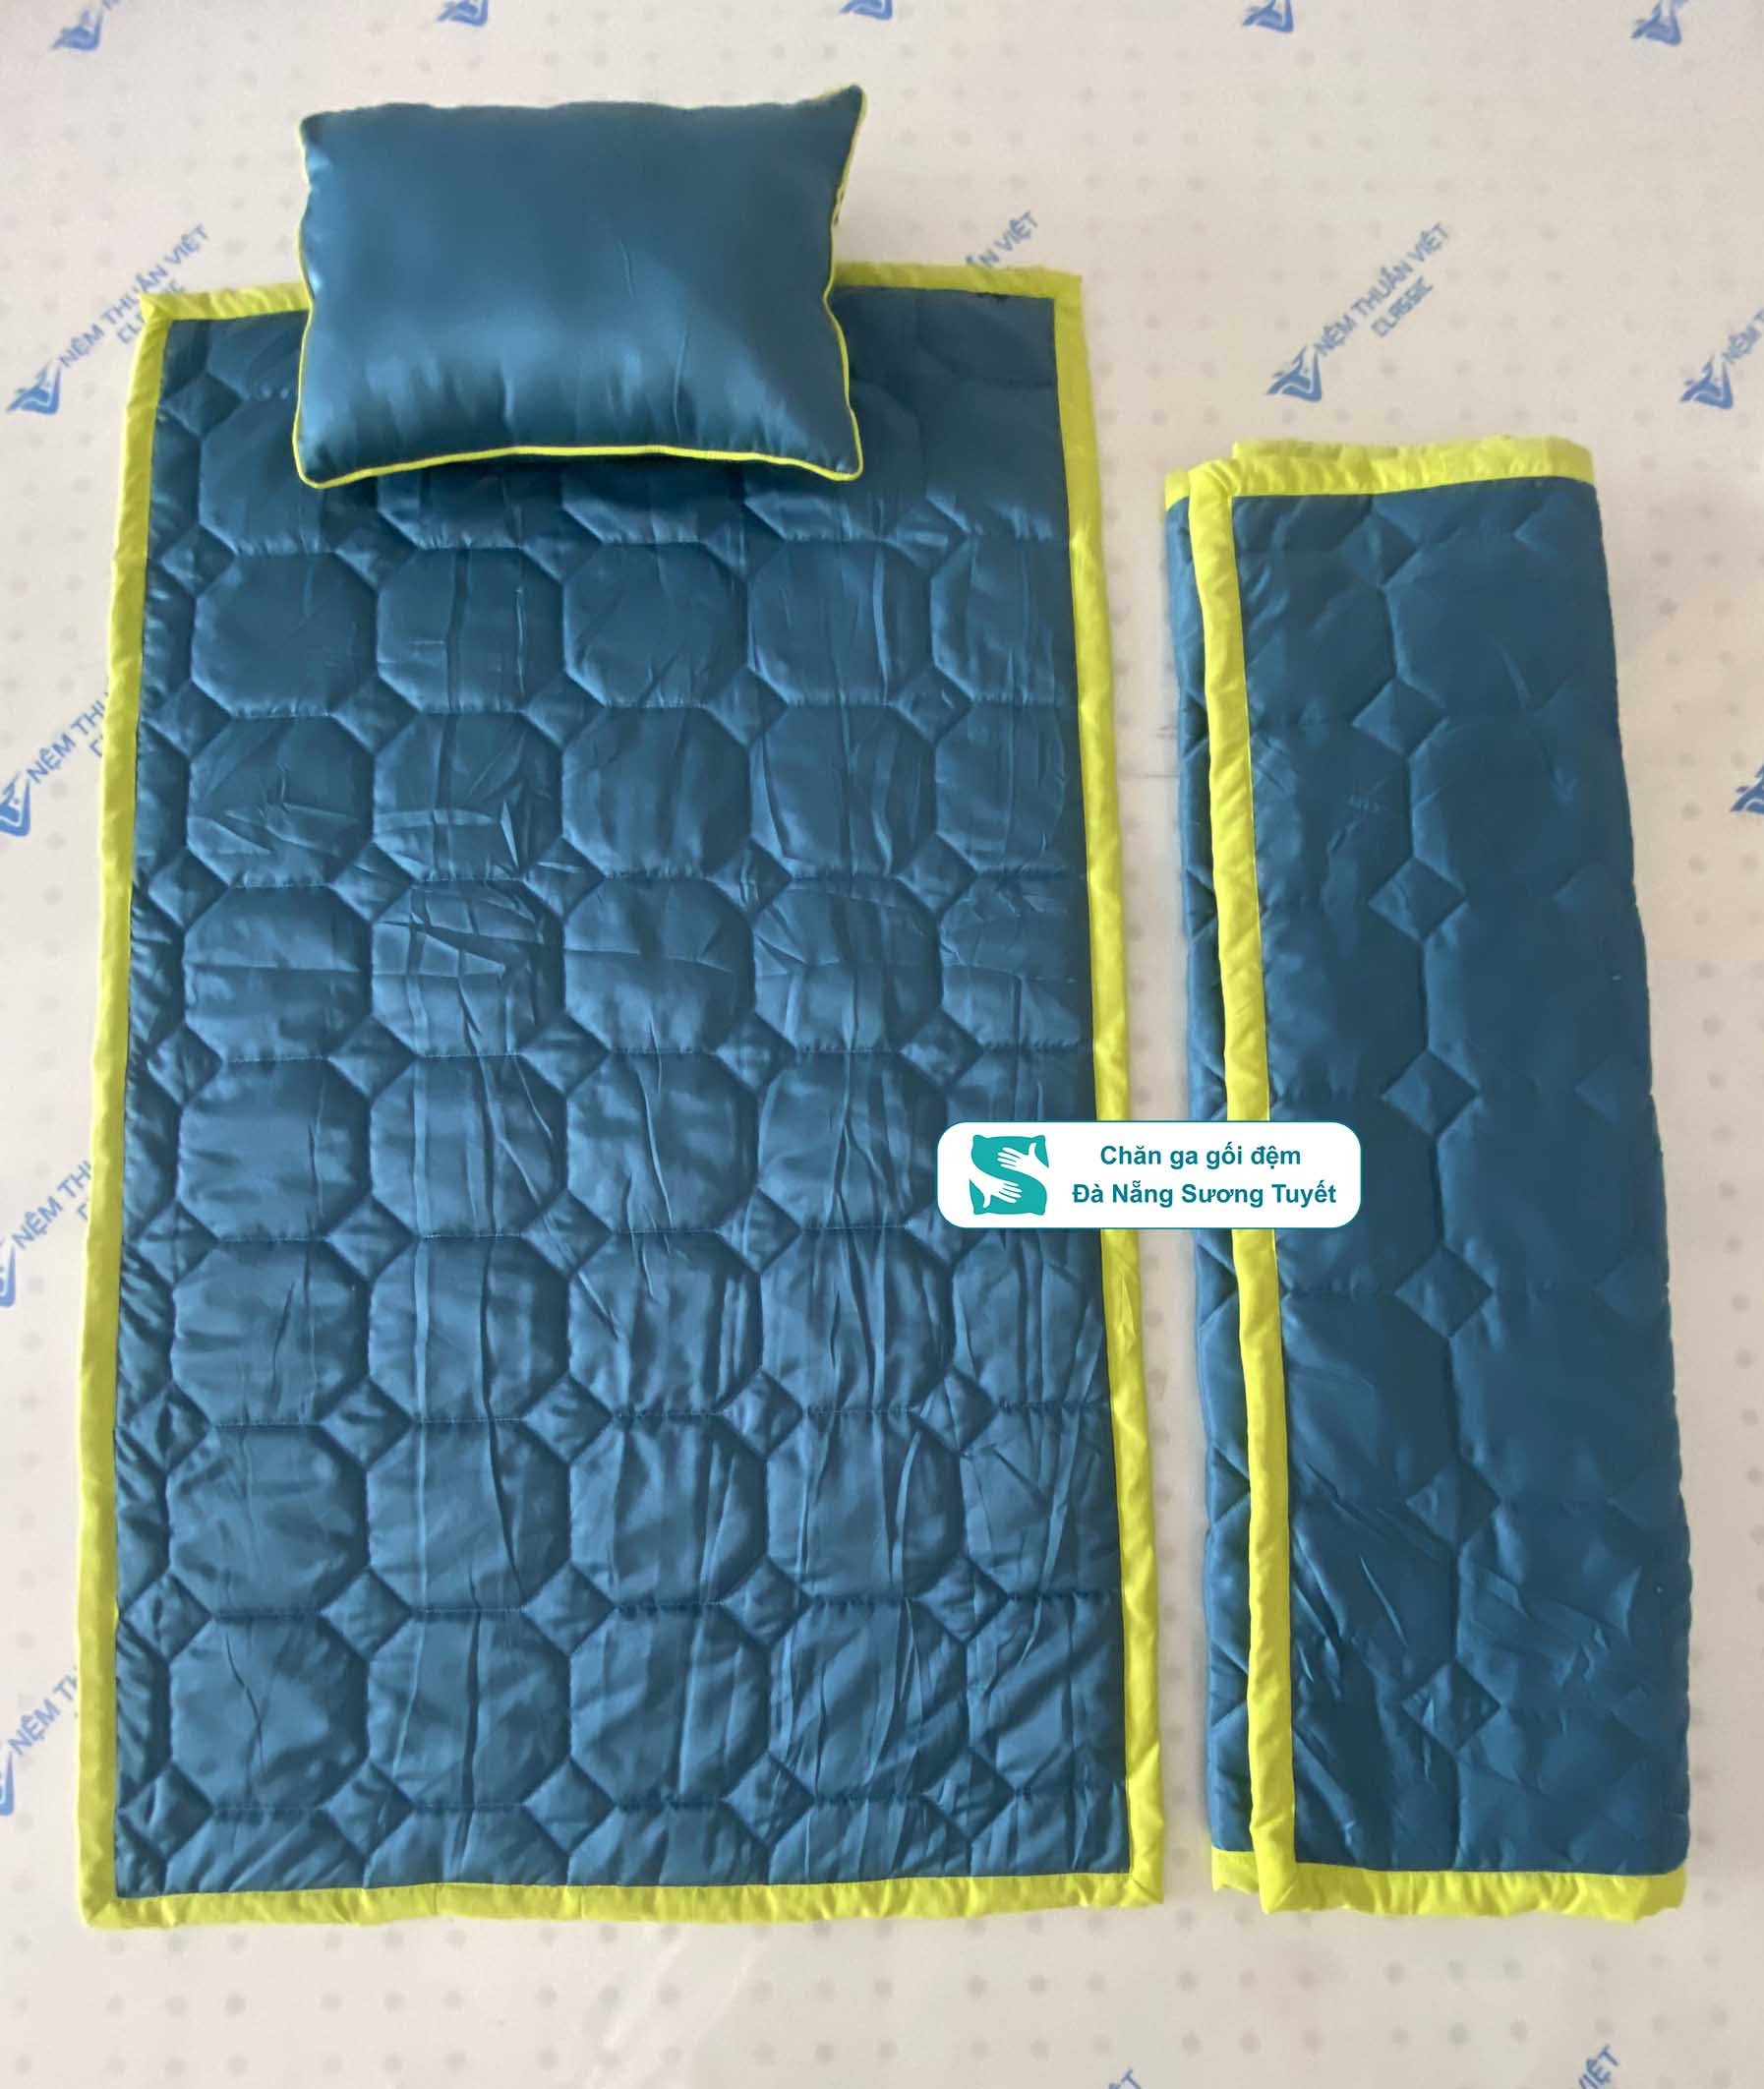 Bề mặt chăn ga được chần chỉ chắc chắn để giữ cho vải luôn bền chắc